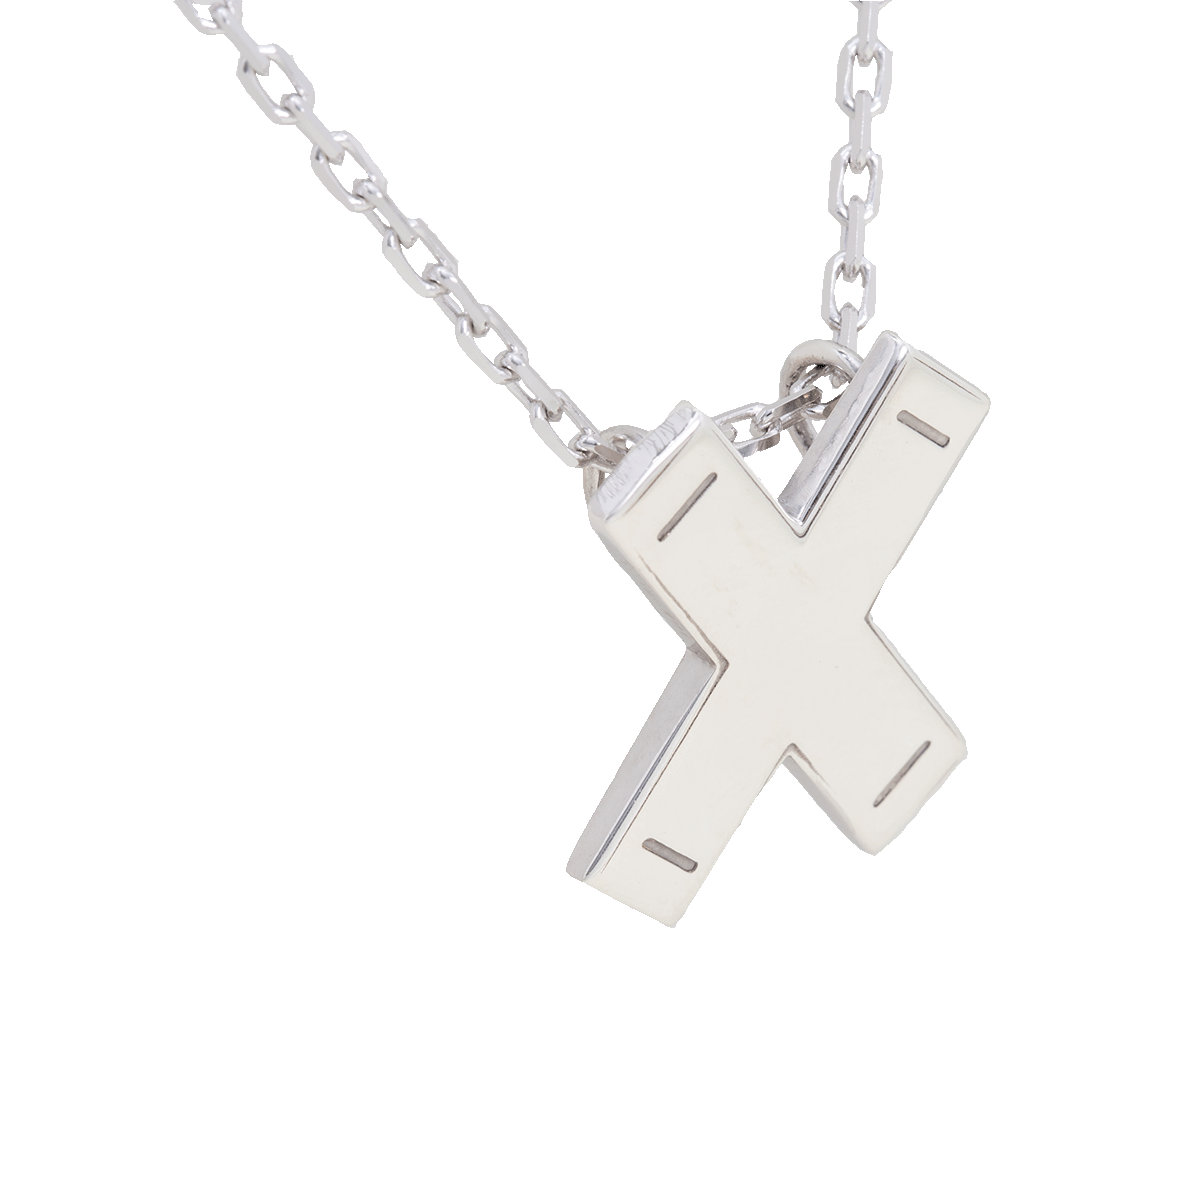 St. Andrew's cross pendant